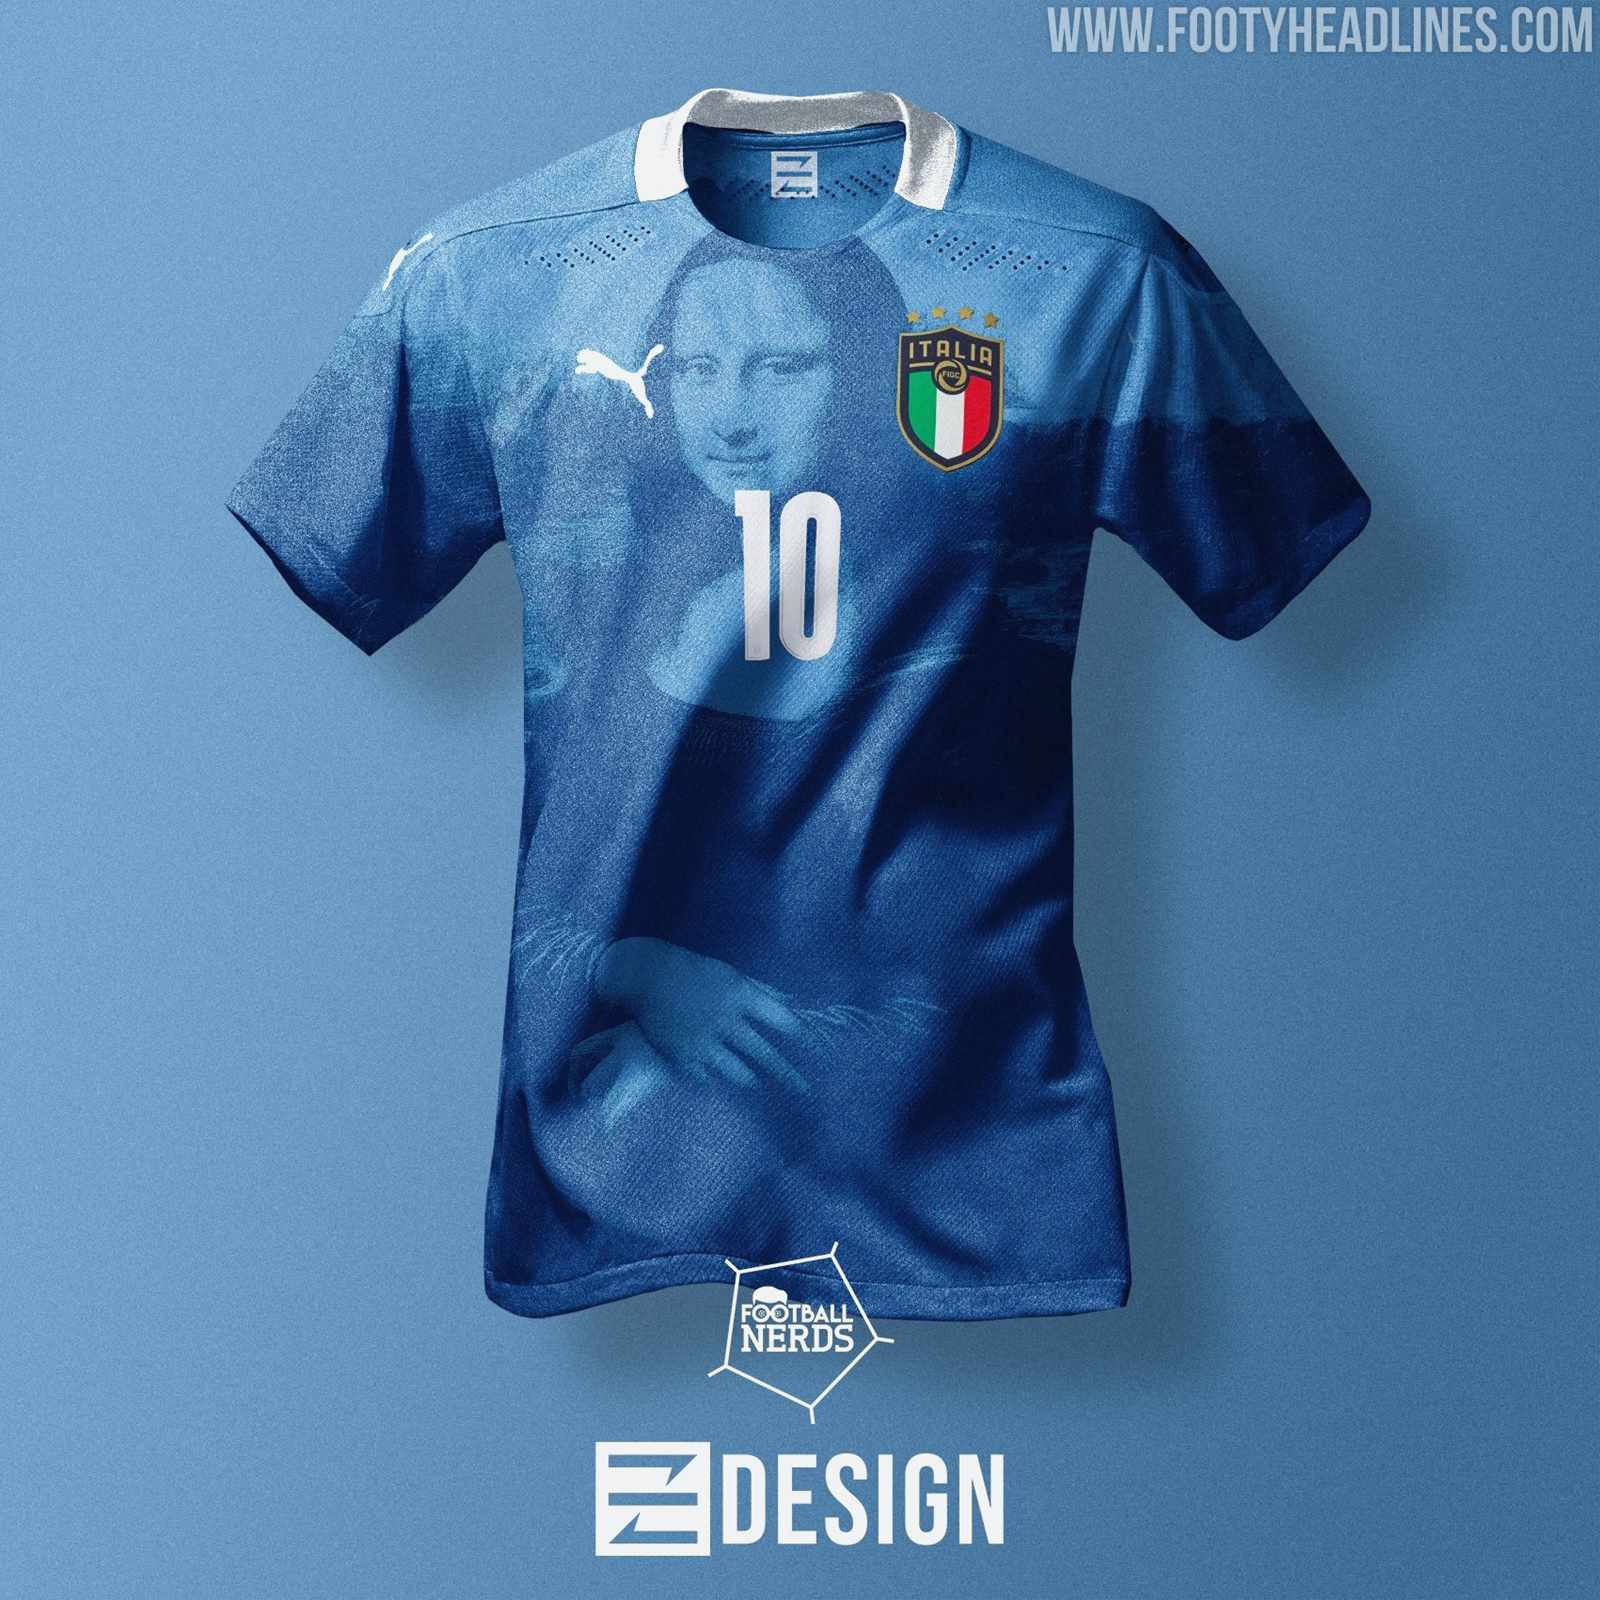 Arashigaoka Estadio Pasivo Puma Italy 'Renaissance' Home Kit Concept "Leaked" - Footy Headlines